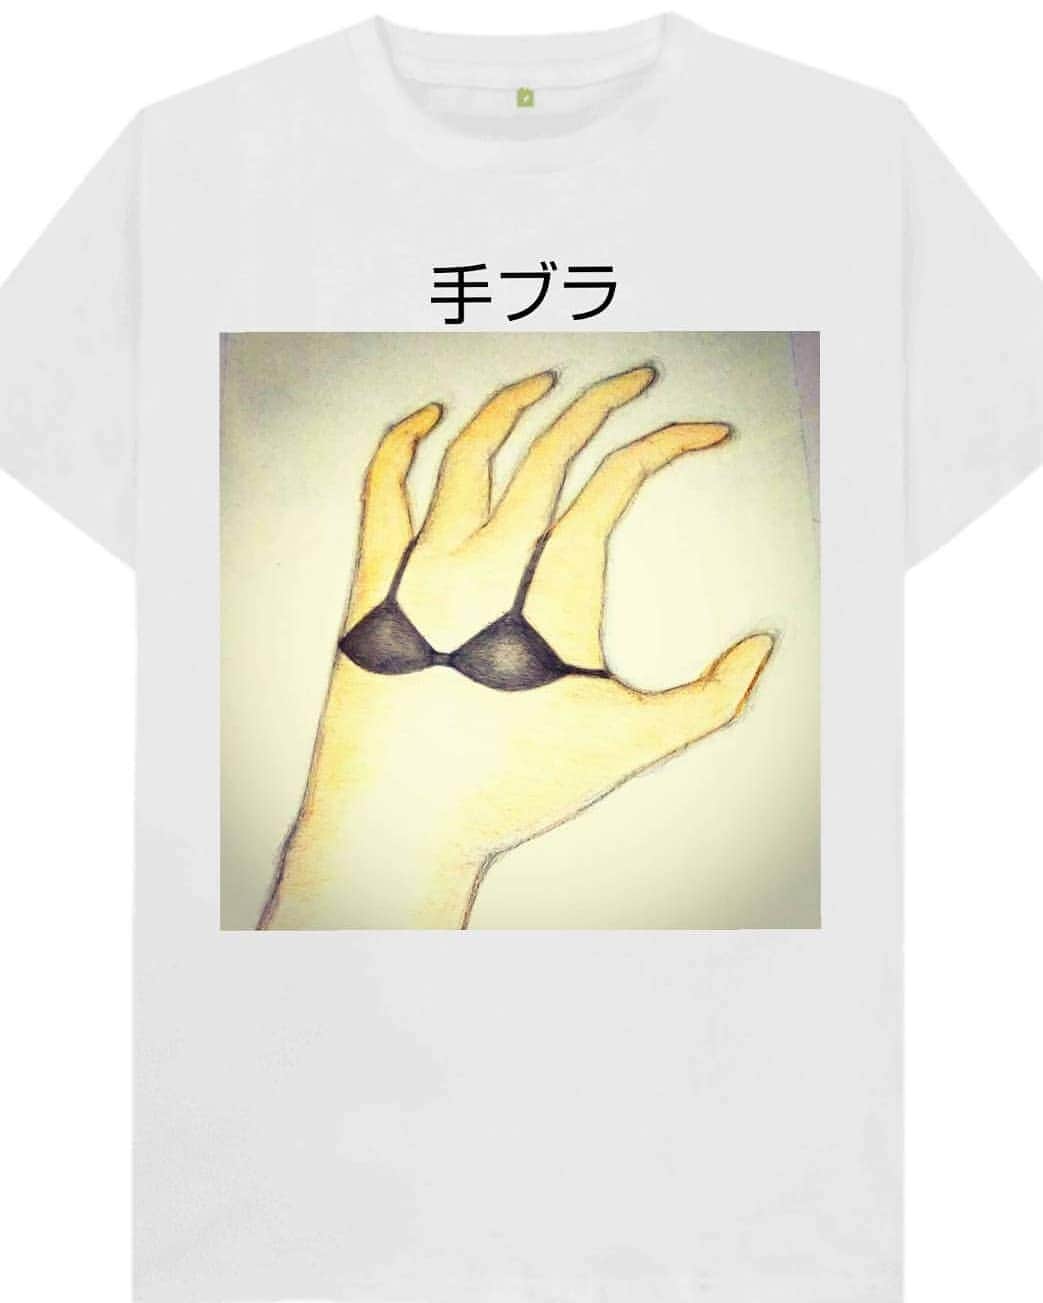 松原義和のインスタグラム：「僕の考えたTシャツ #風藤松原#松原義和#Tシャツ#文字#文字Tシャツ#ネタ#小ネタ#ネタTシャツ#ファッション#白T#お笑い#笑い#fashion#love#shirt#gu#ユニクロ#japanese#white#洋服#clothes#interesting#ブラジャー#follow#black#hand」